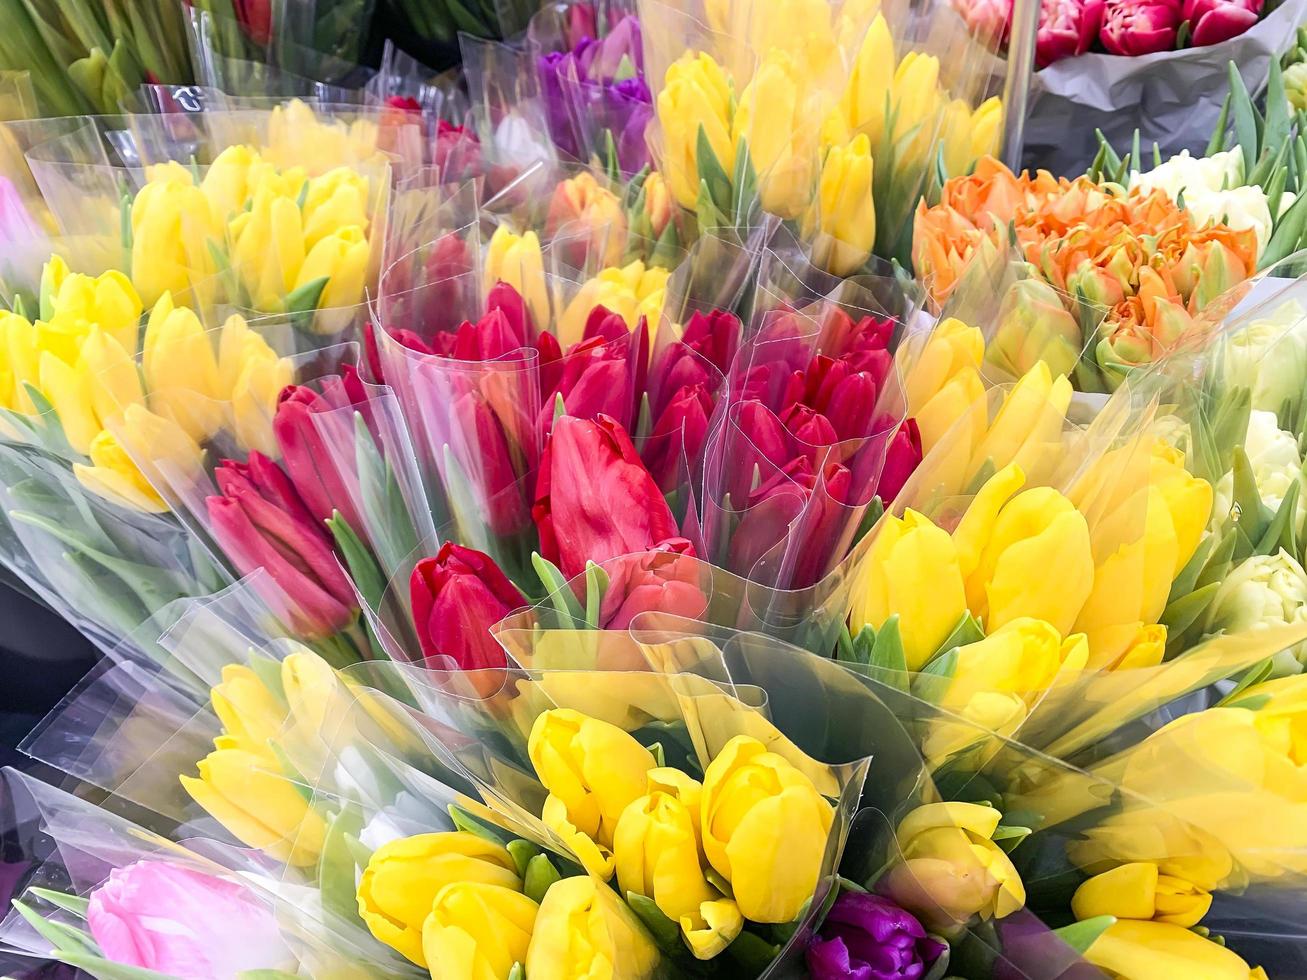 luxuosos buquês de tulipas multicoloridas. flores da primavera. presentes. foto de estúdio